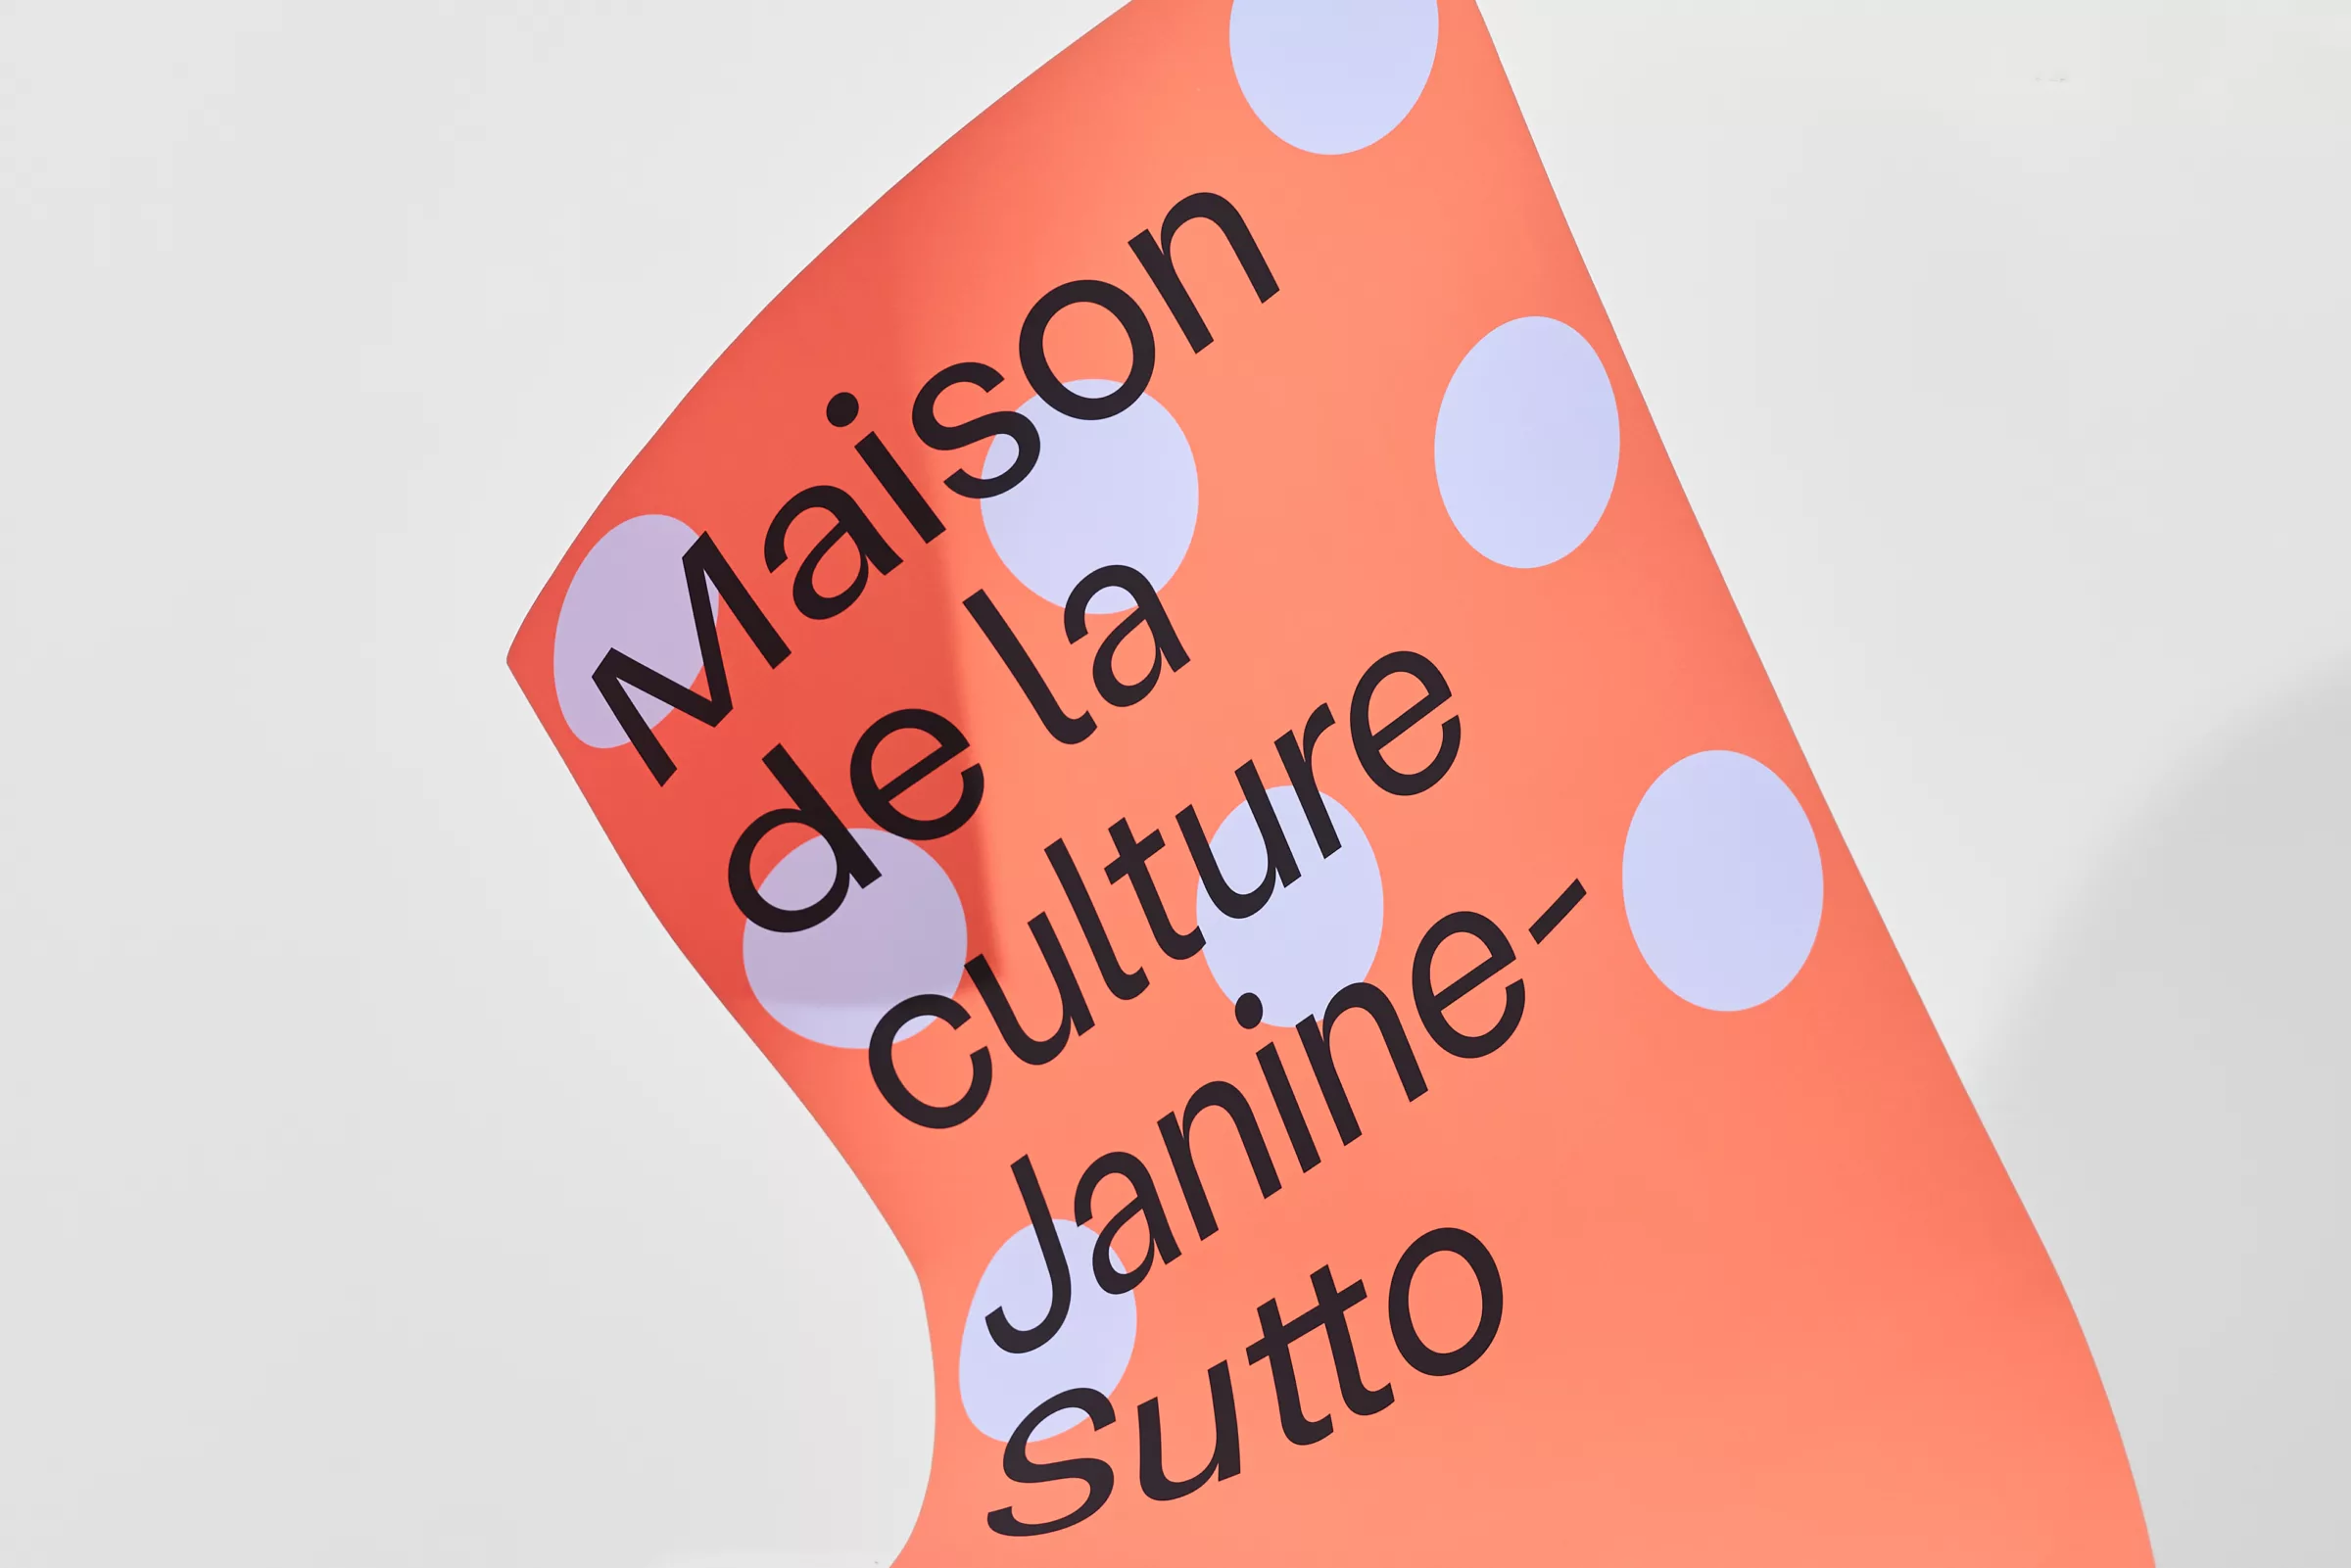 Maison de la culture Janine-Sutto